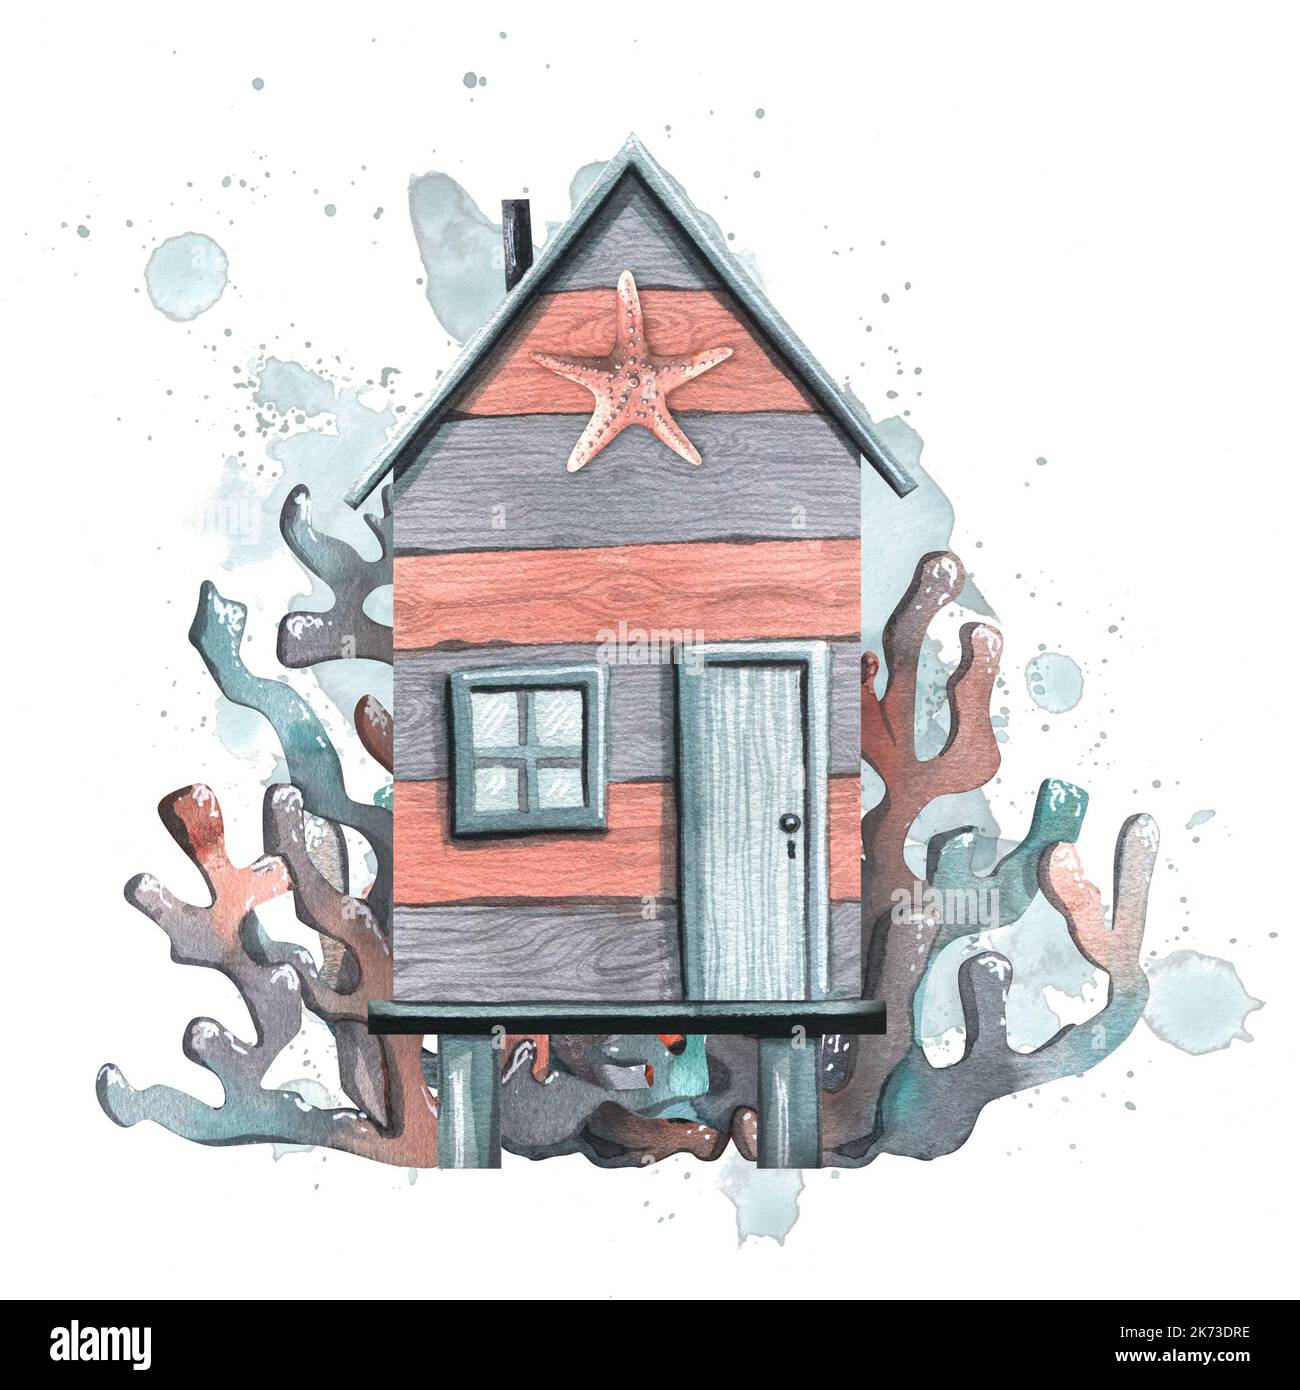 Plage, maison de pêche, rayée, en bois avec une étoile de mer et des coraux sur le fond des taches et des éclaboussures d'eau. Illustration aquarelle Banque D'Images